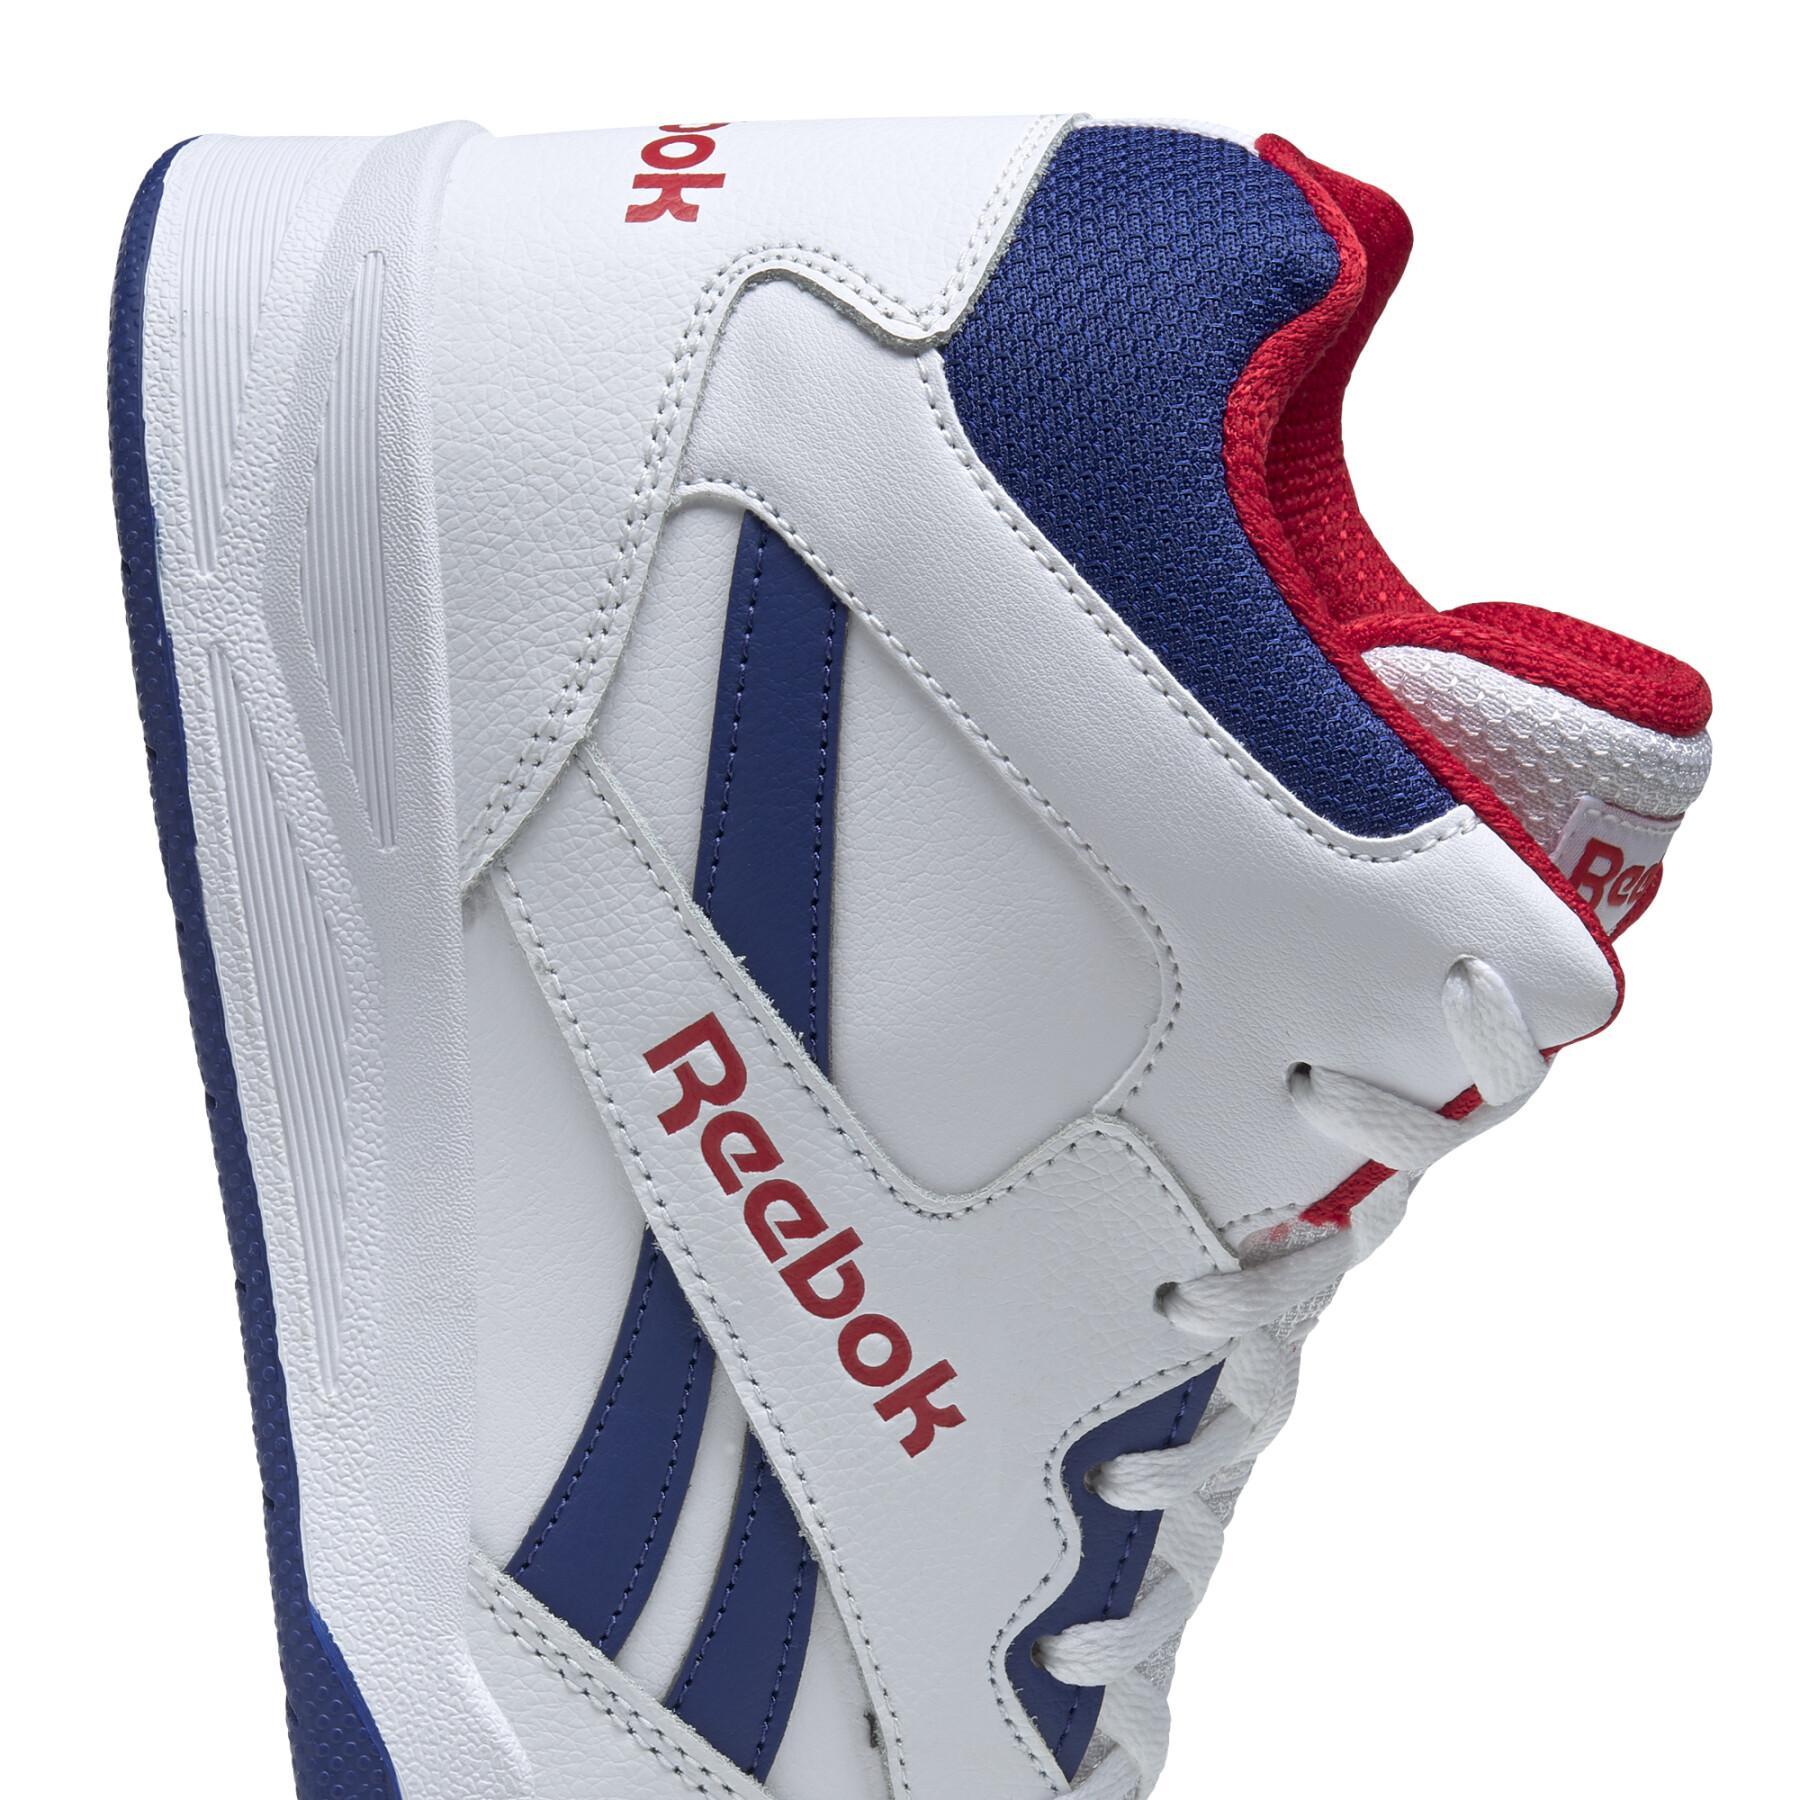 Sneakers Reebok Royal BB4500 HI2